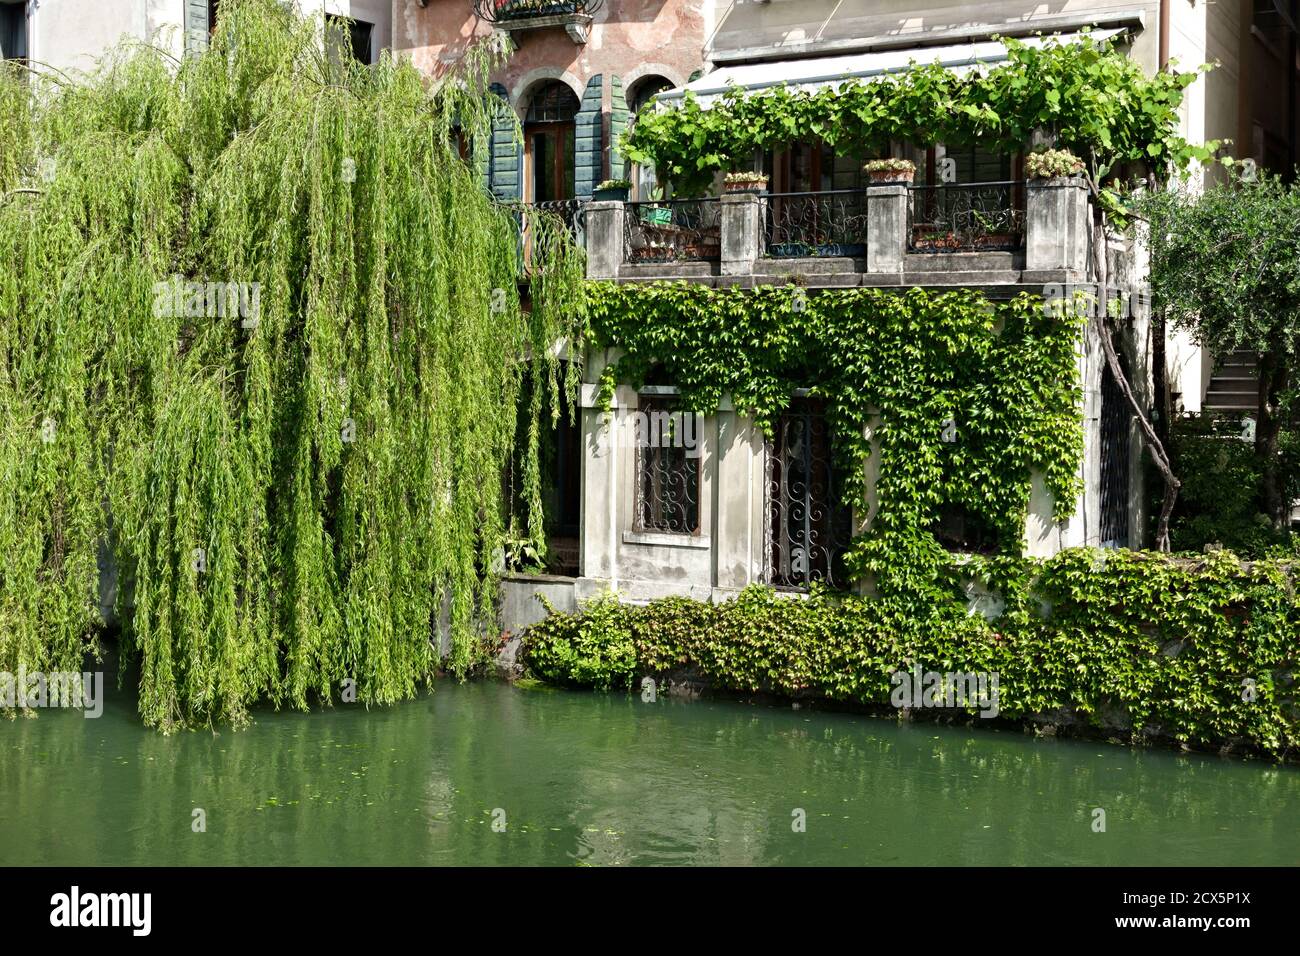 Blick auf typische venezianische Häuser entlang des Flusses Sile, Riviera Santa Margherita. Weinender Weidenbaum. Treviso, Venetien, Italien, Europa. Stockfoto